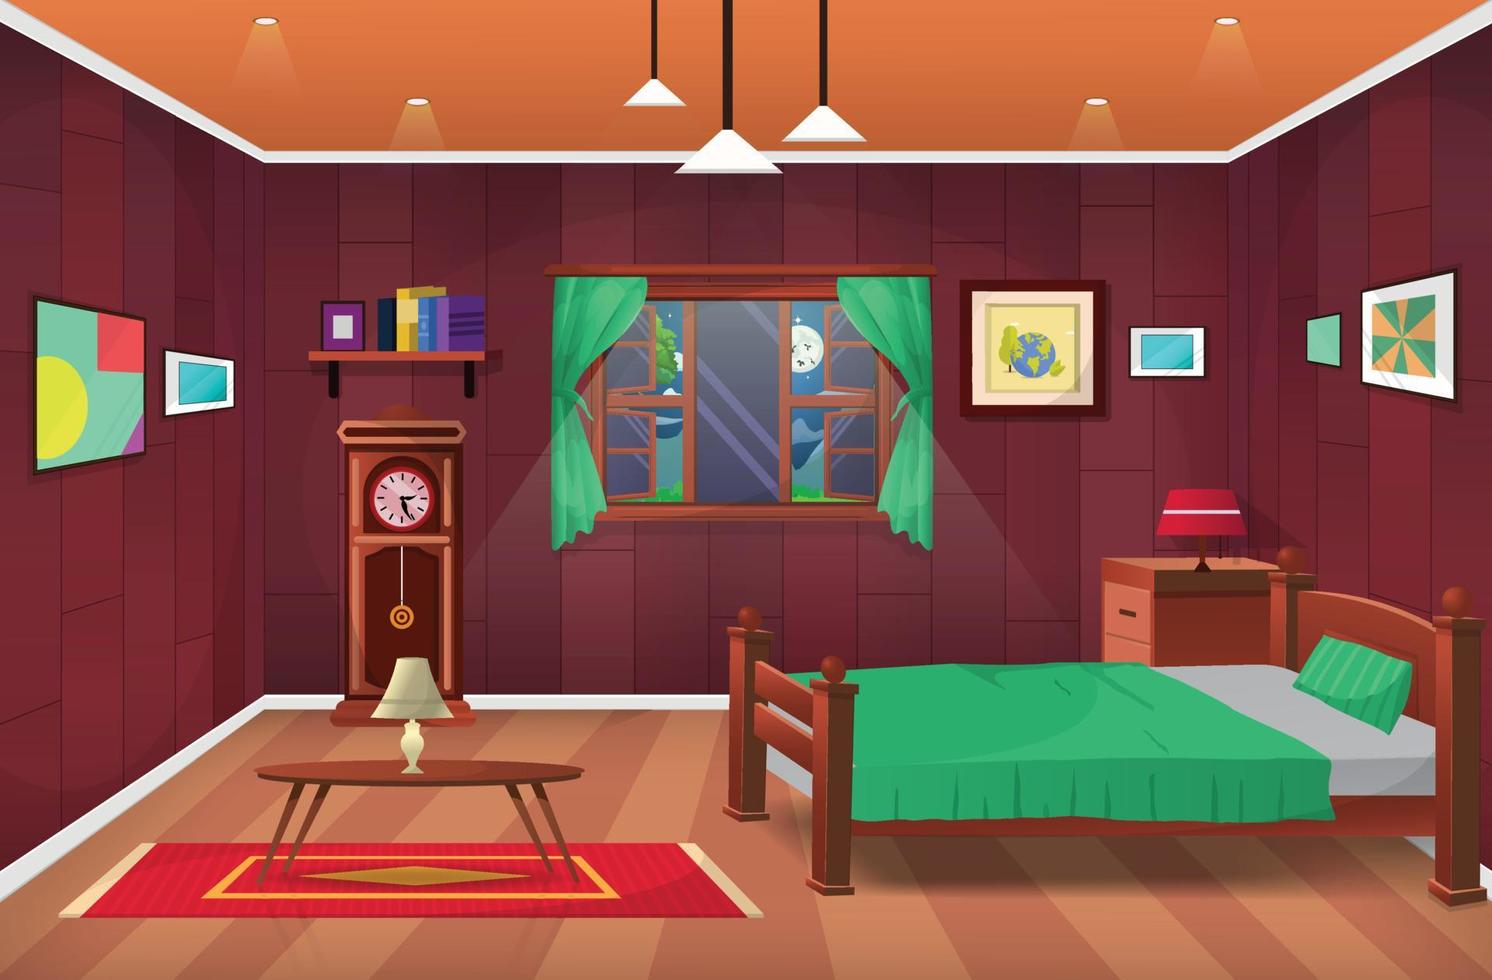 interior de la habitación, dormitorio, salón de dibujos animados, dormitorio infantil con muebles. habitación juvenil con cama. vector